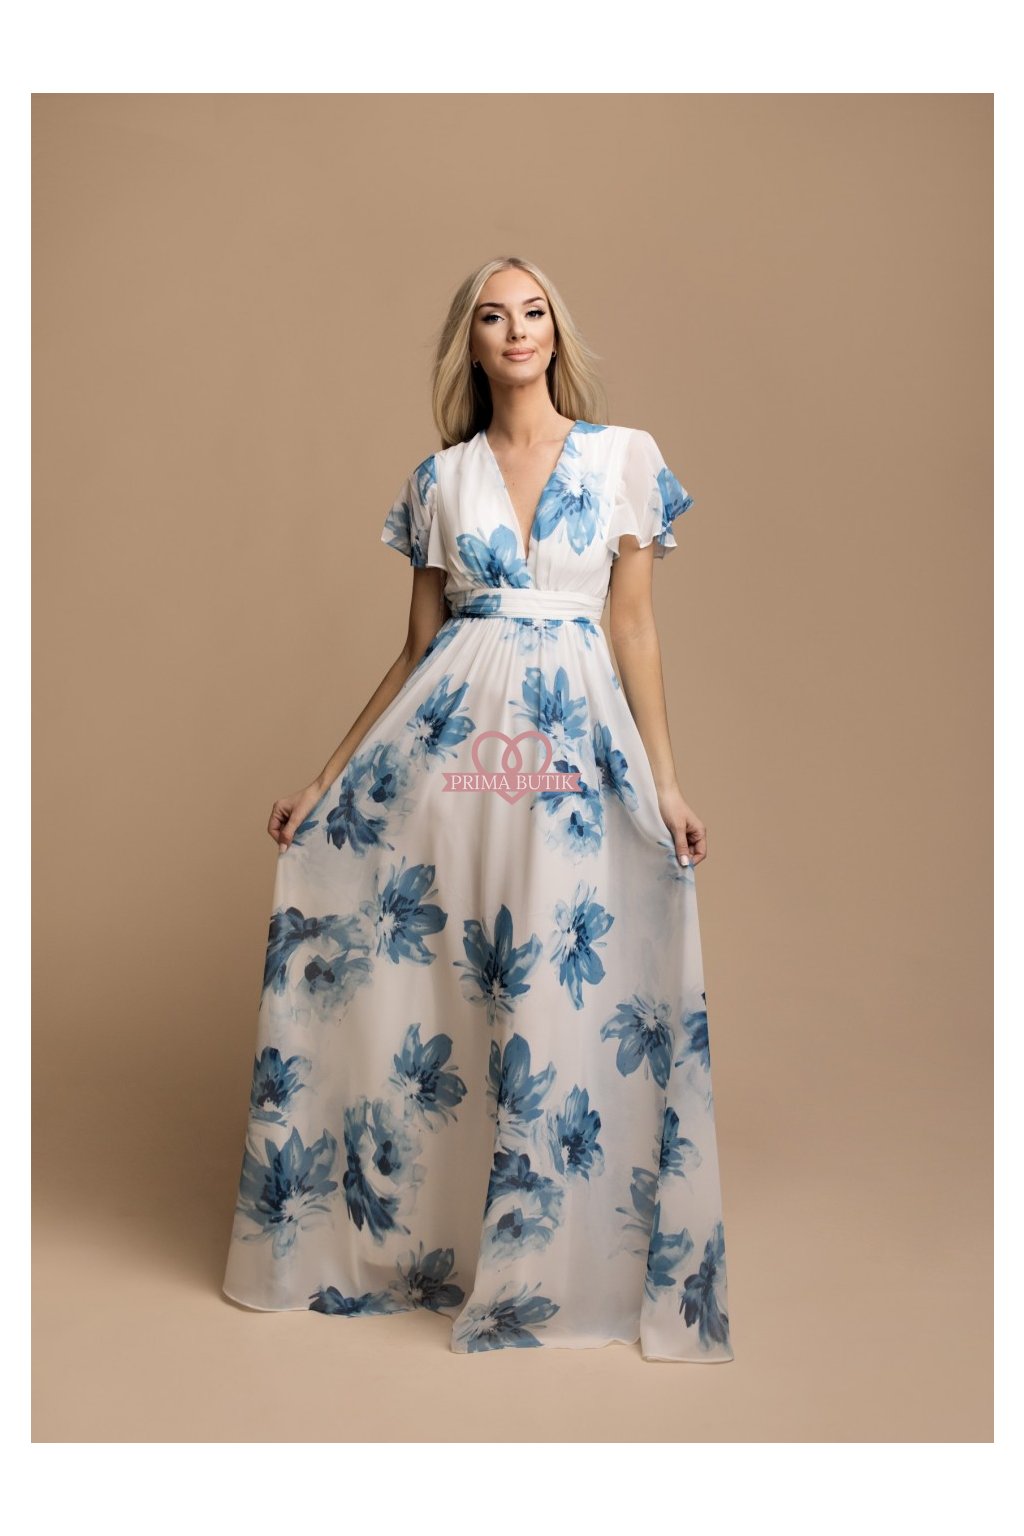 Šaty družička VICKY modré květy